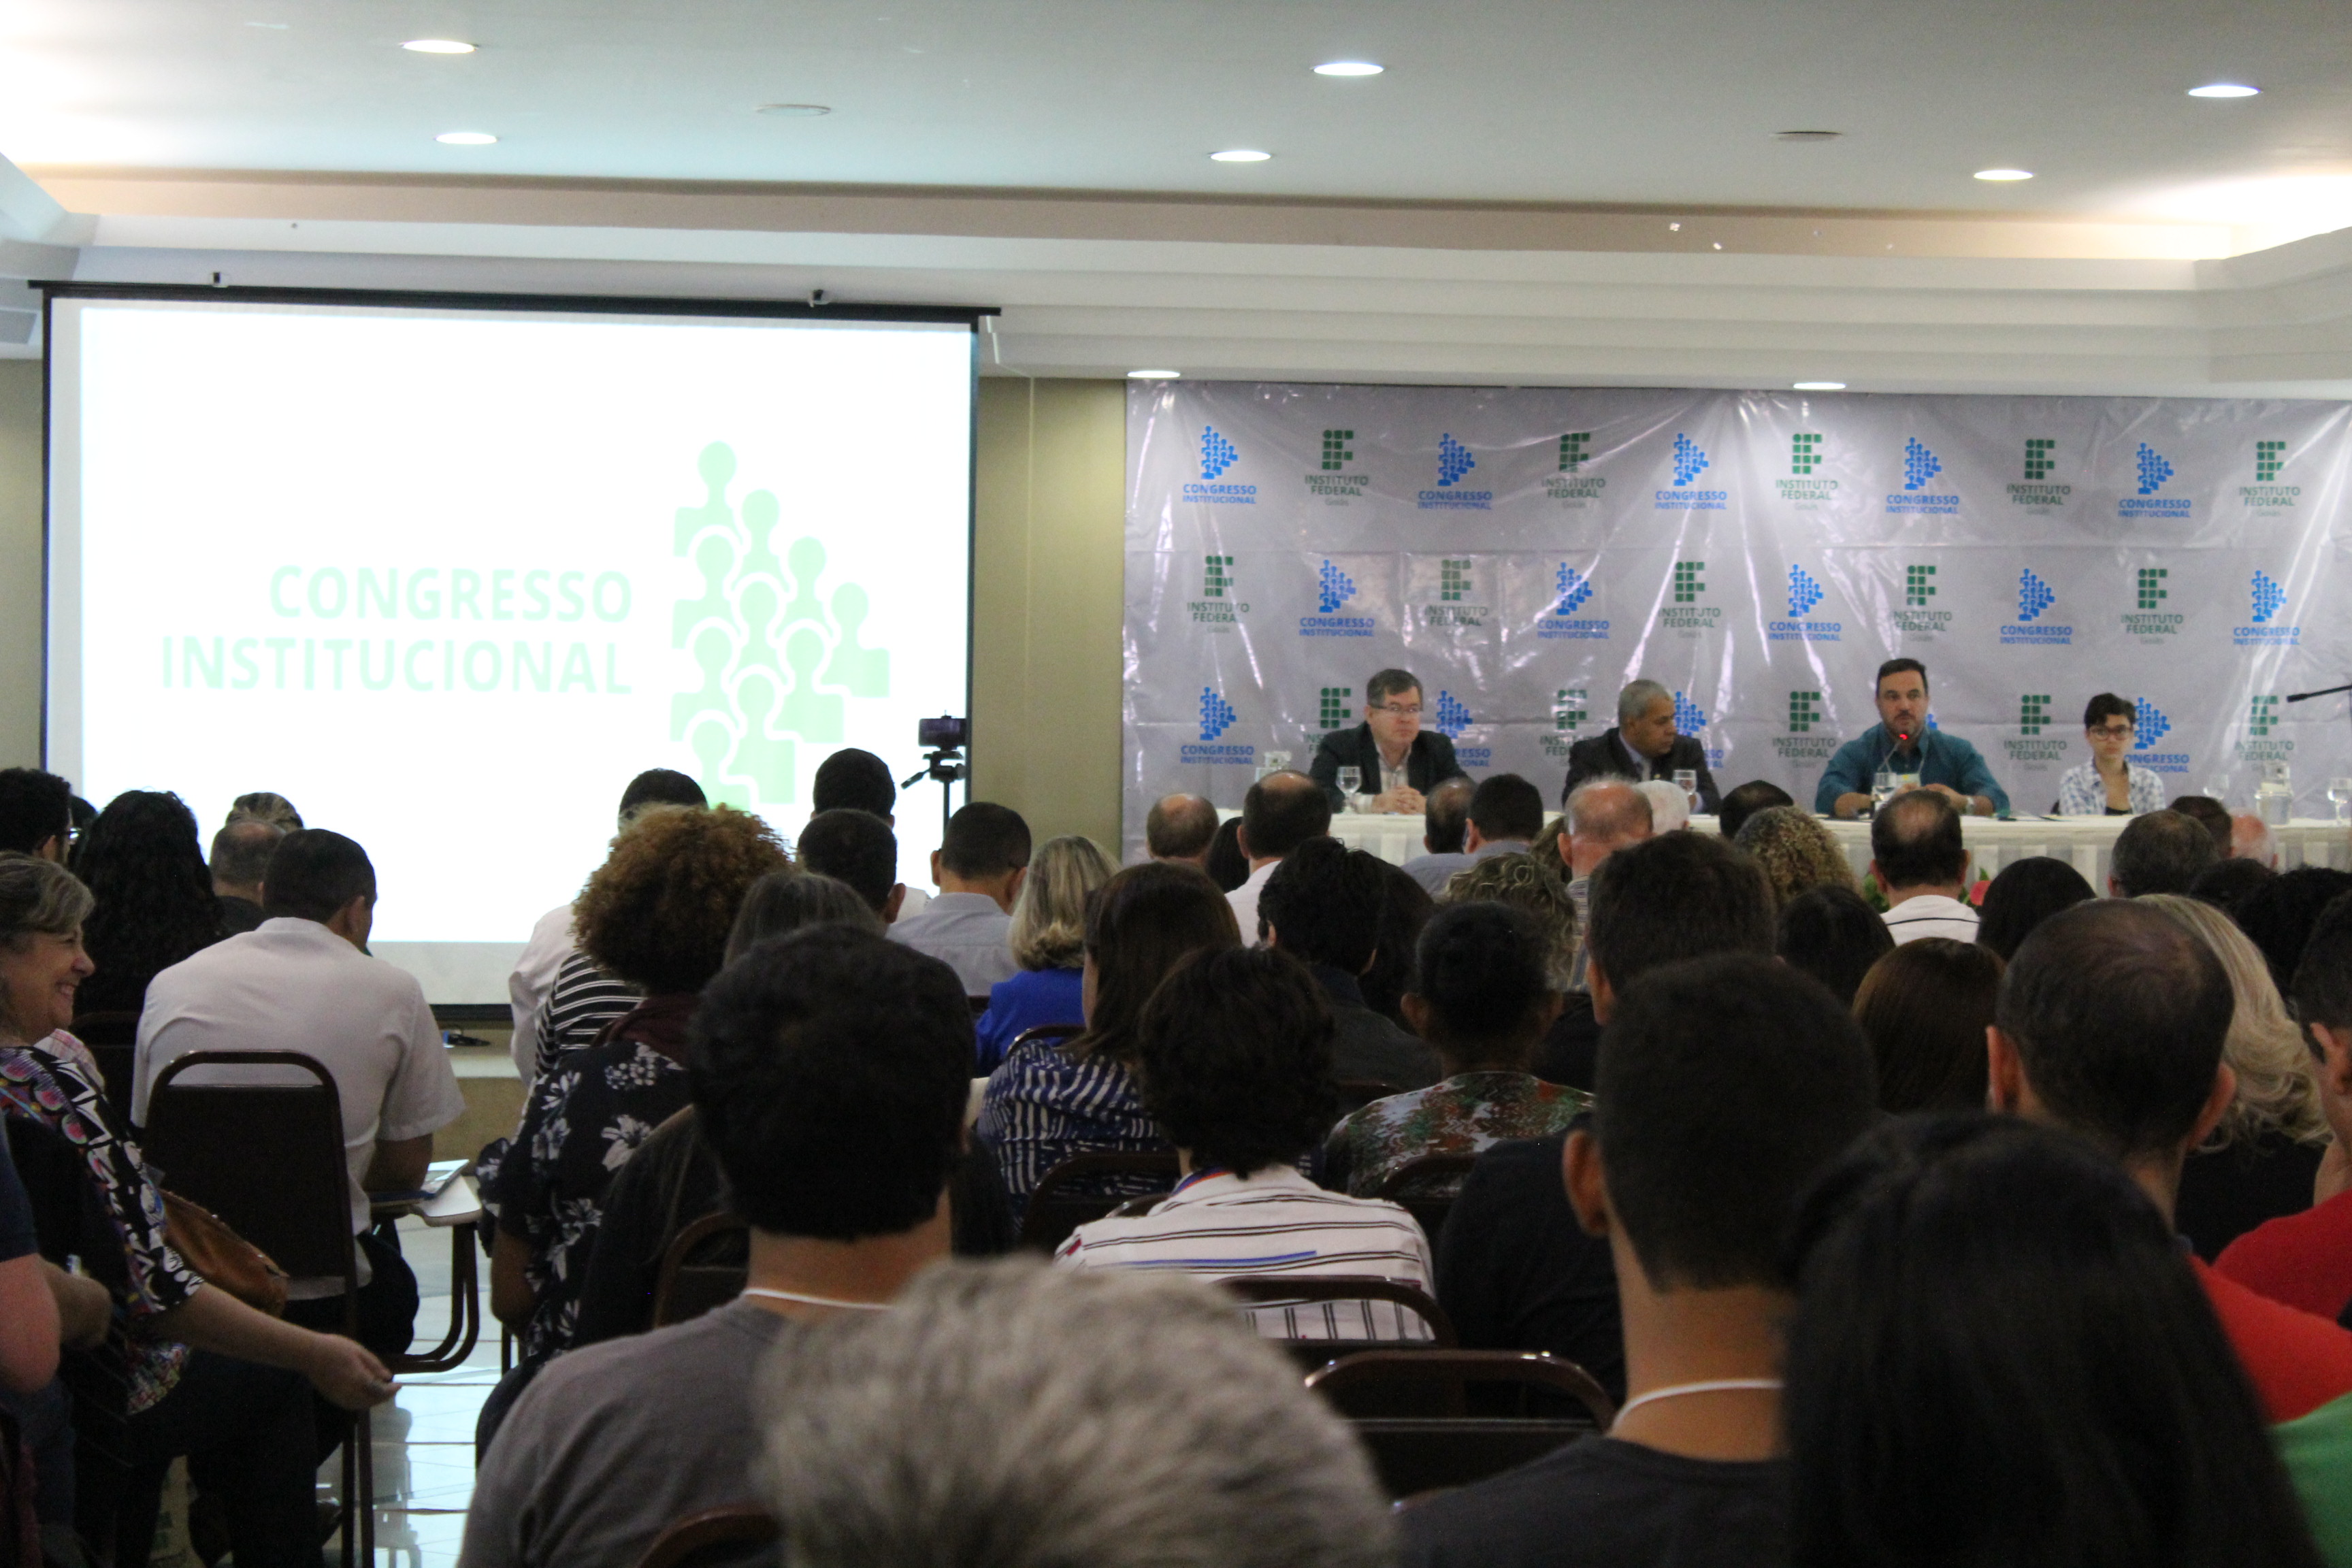 Imagem da sala de eventos onde estão reunidos servidores que participam do Congresso Institucional do IFG